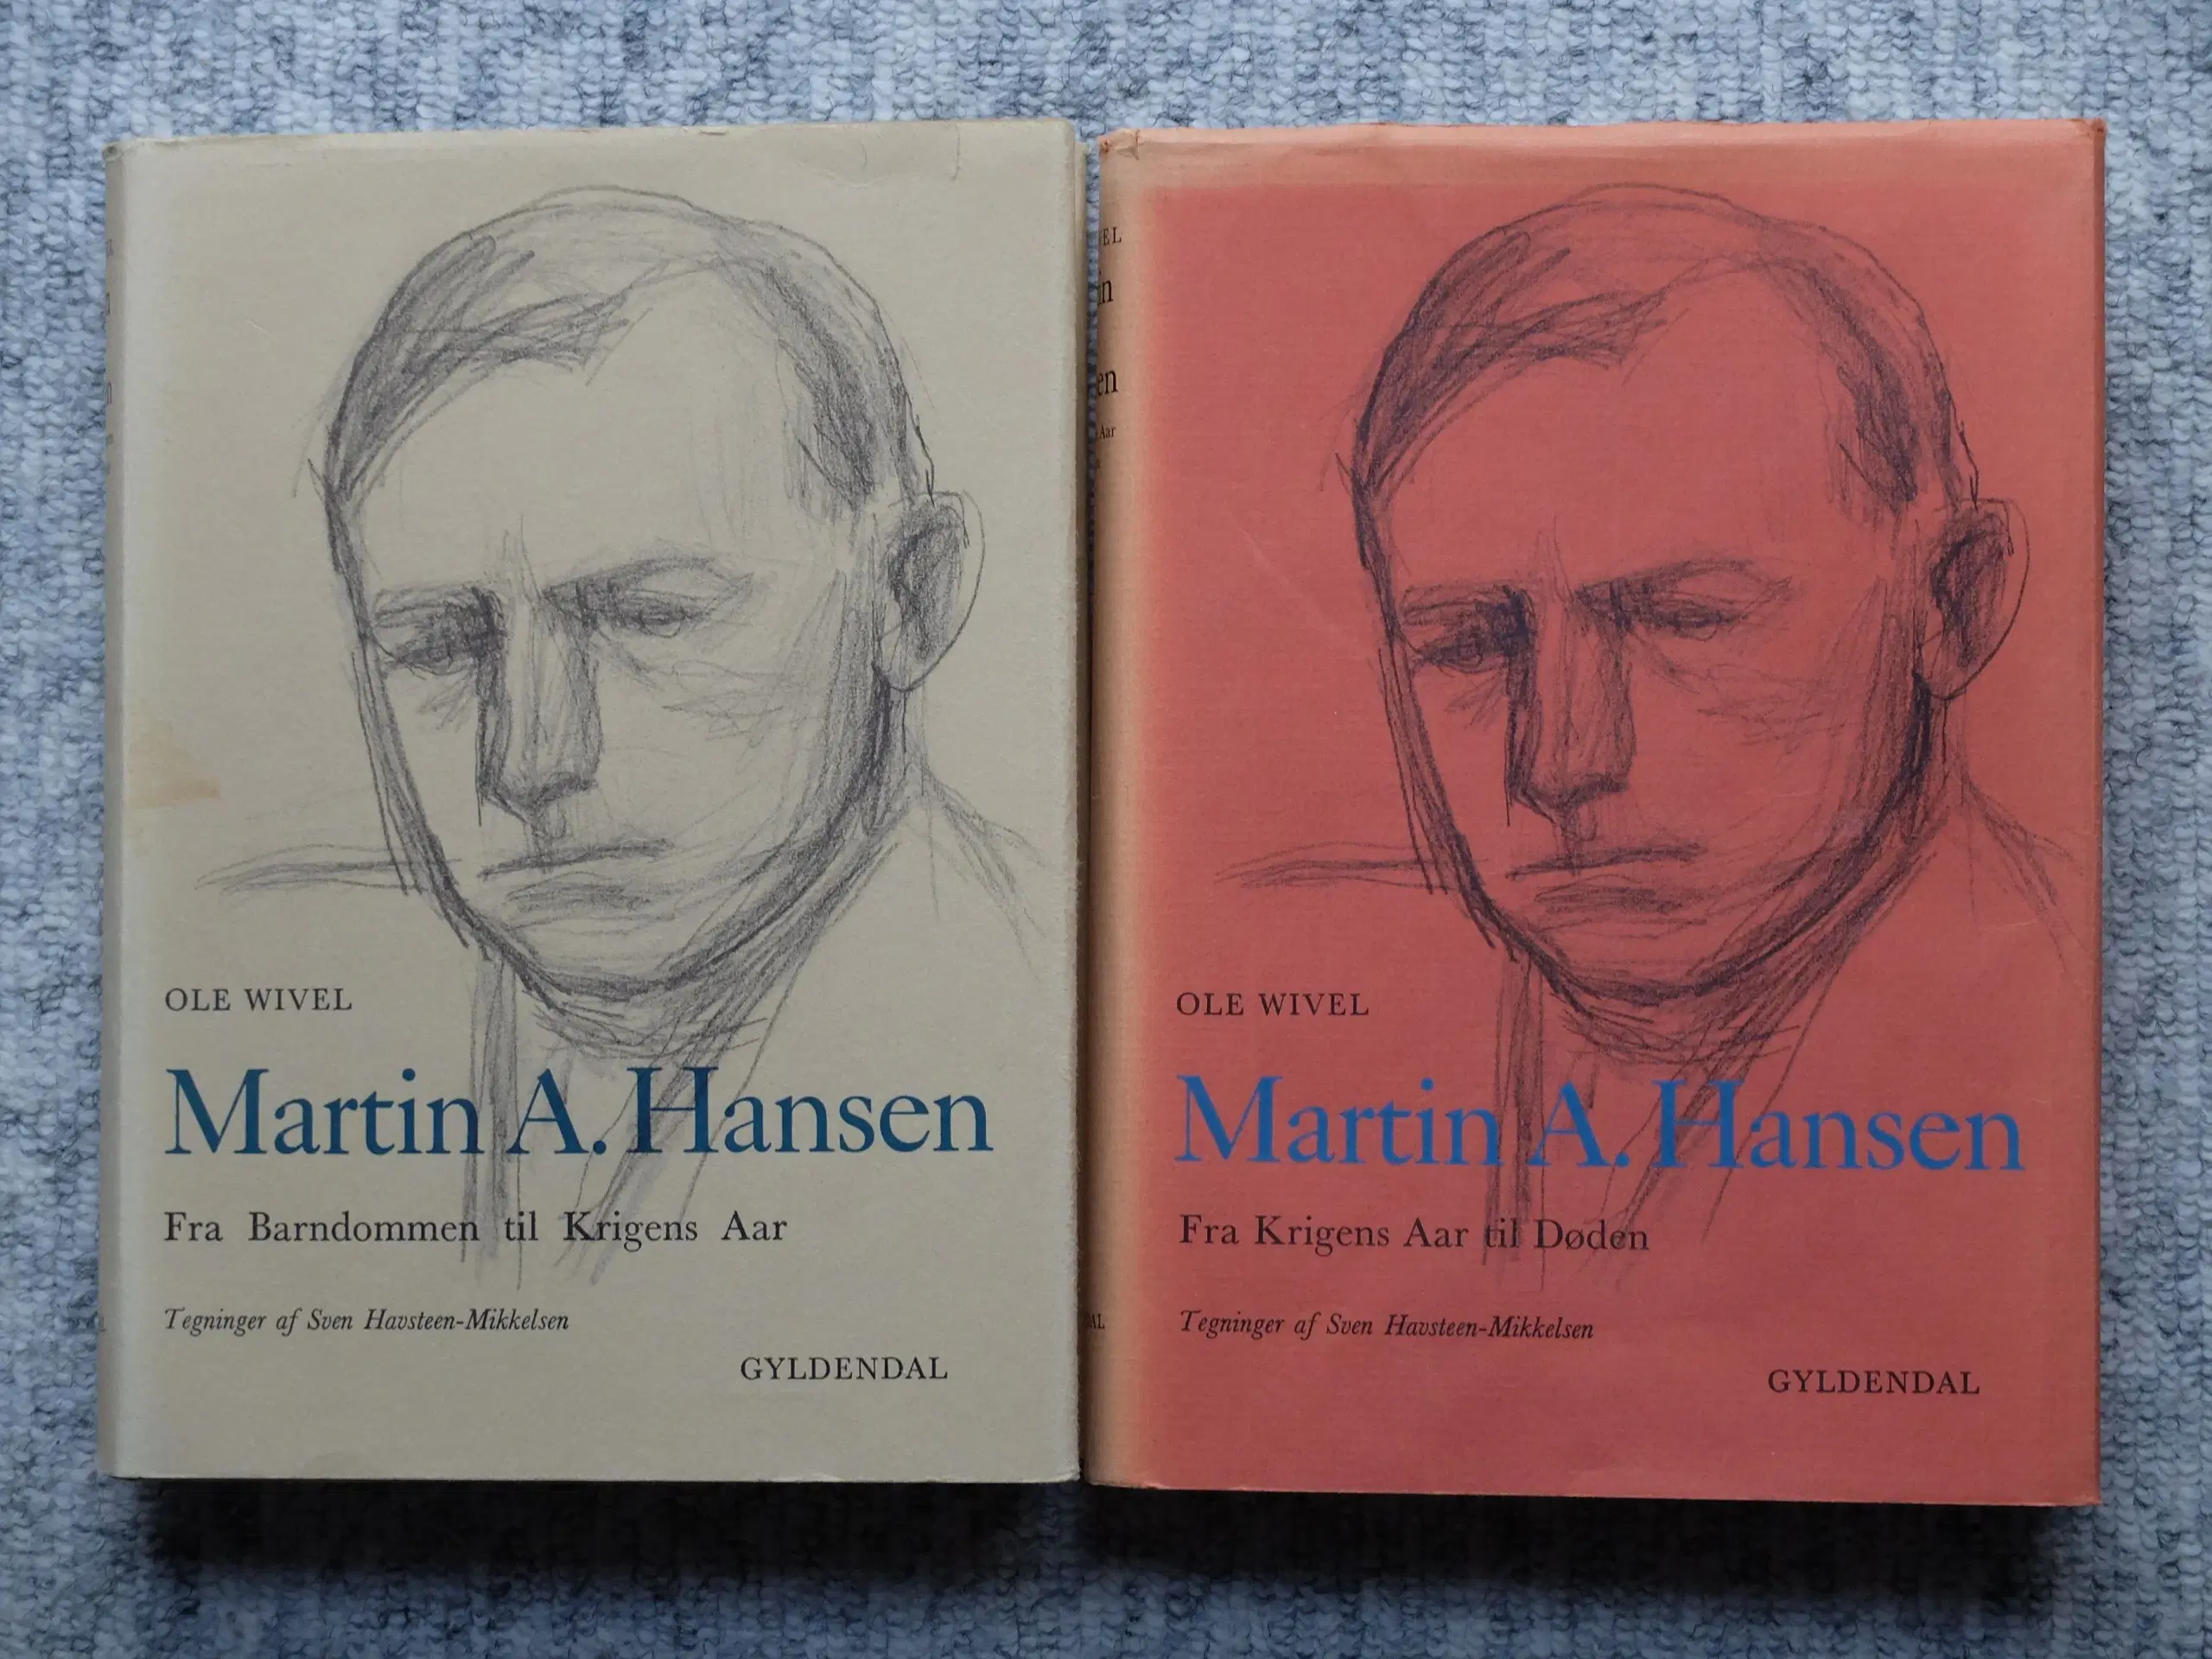 Martin A Hansen - Biografi 1+2